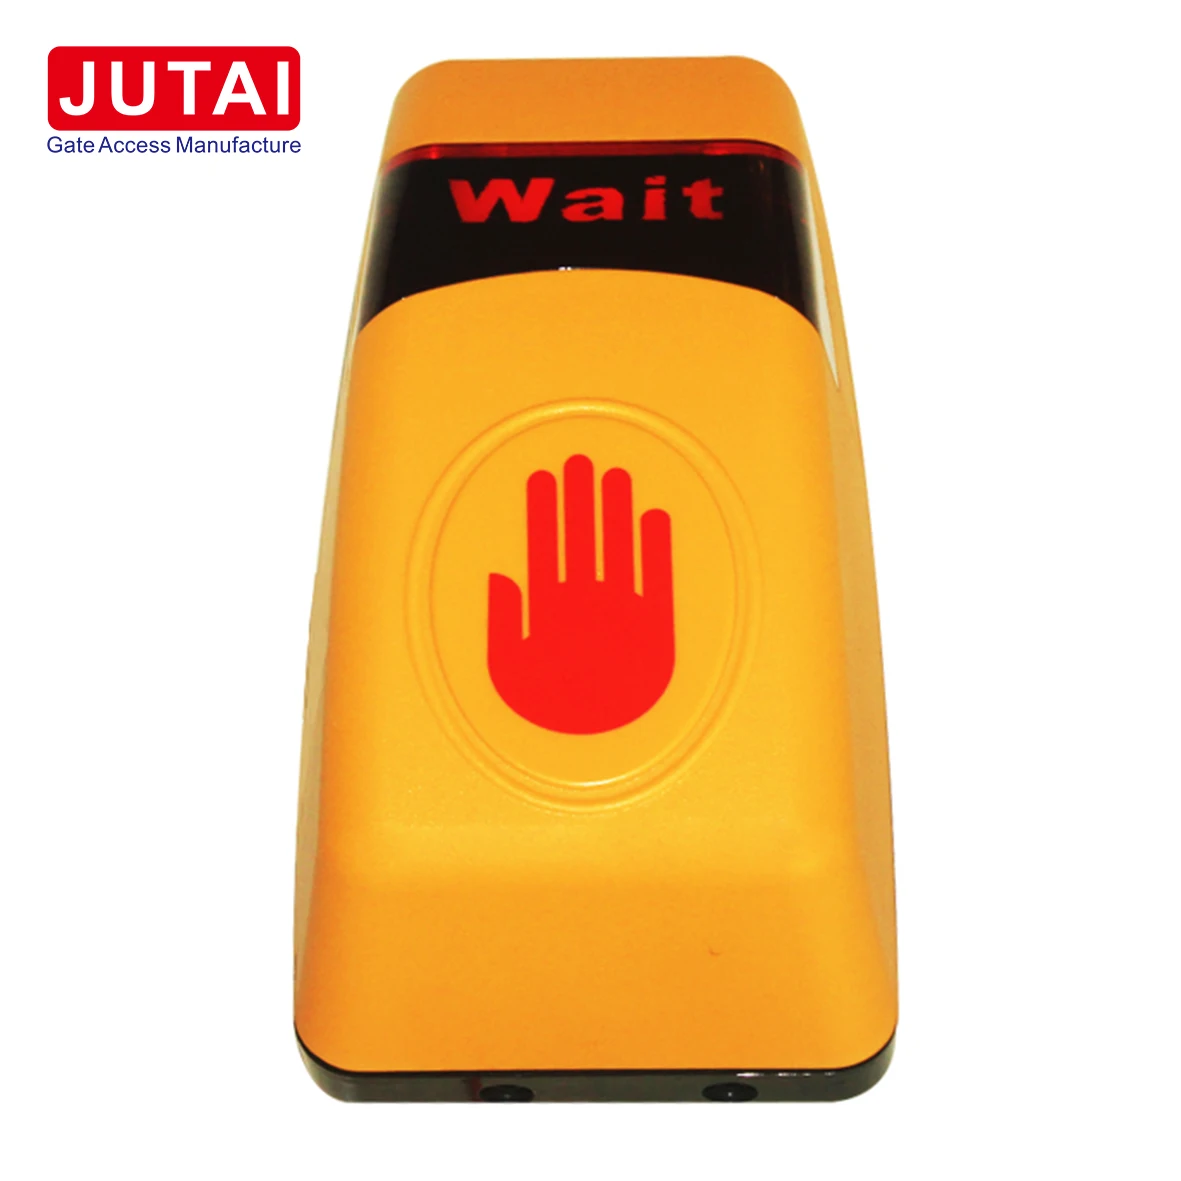 Pulsante touchless sensore a infrarossi per porte JUTAI JT-THE per sistema di controllo accessi e sistema di accesso al cancello